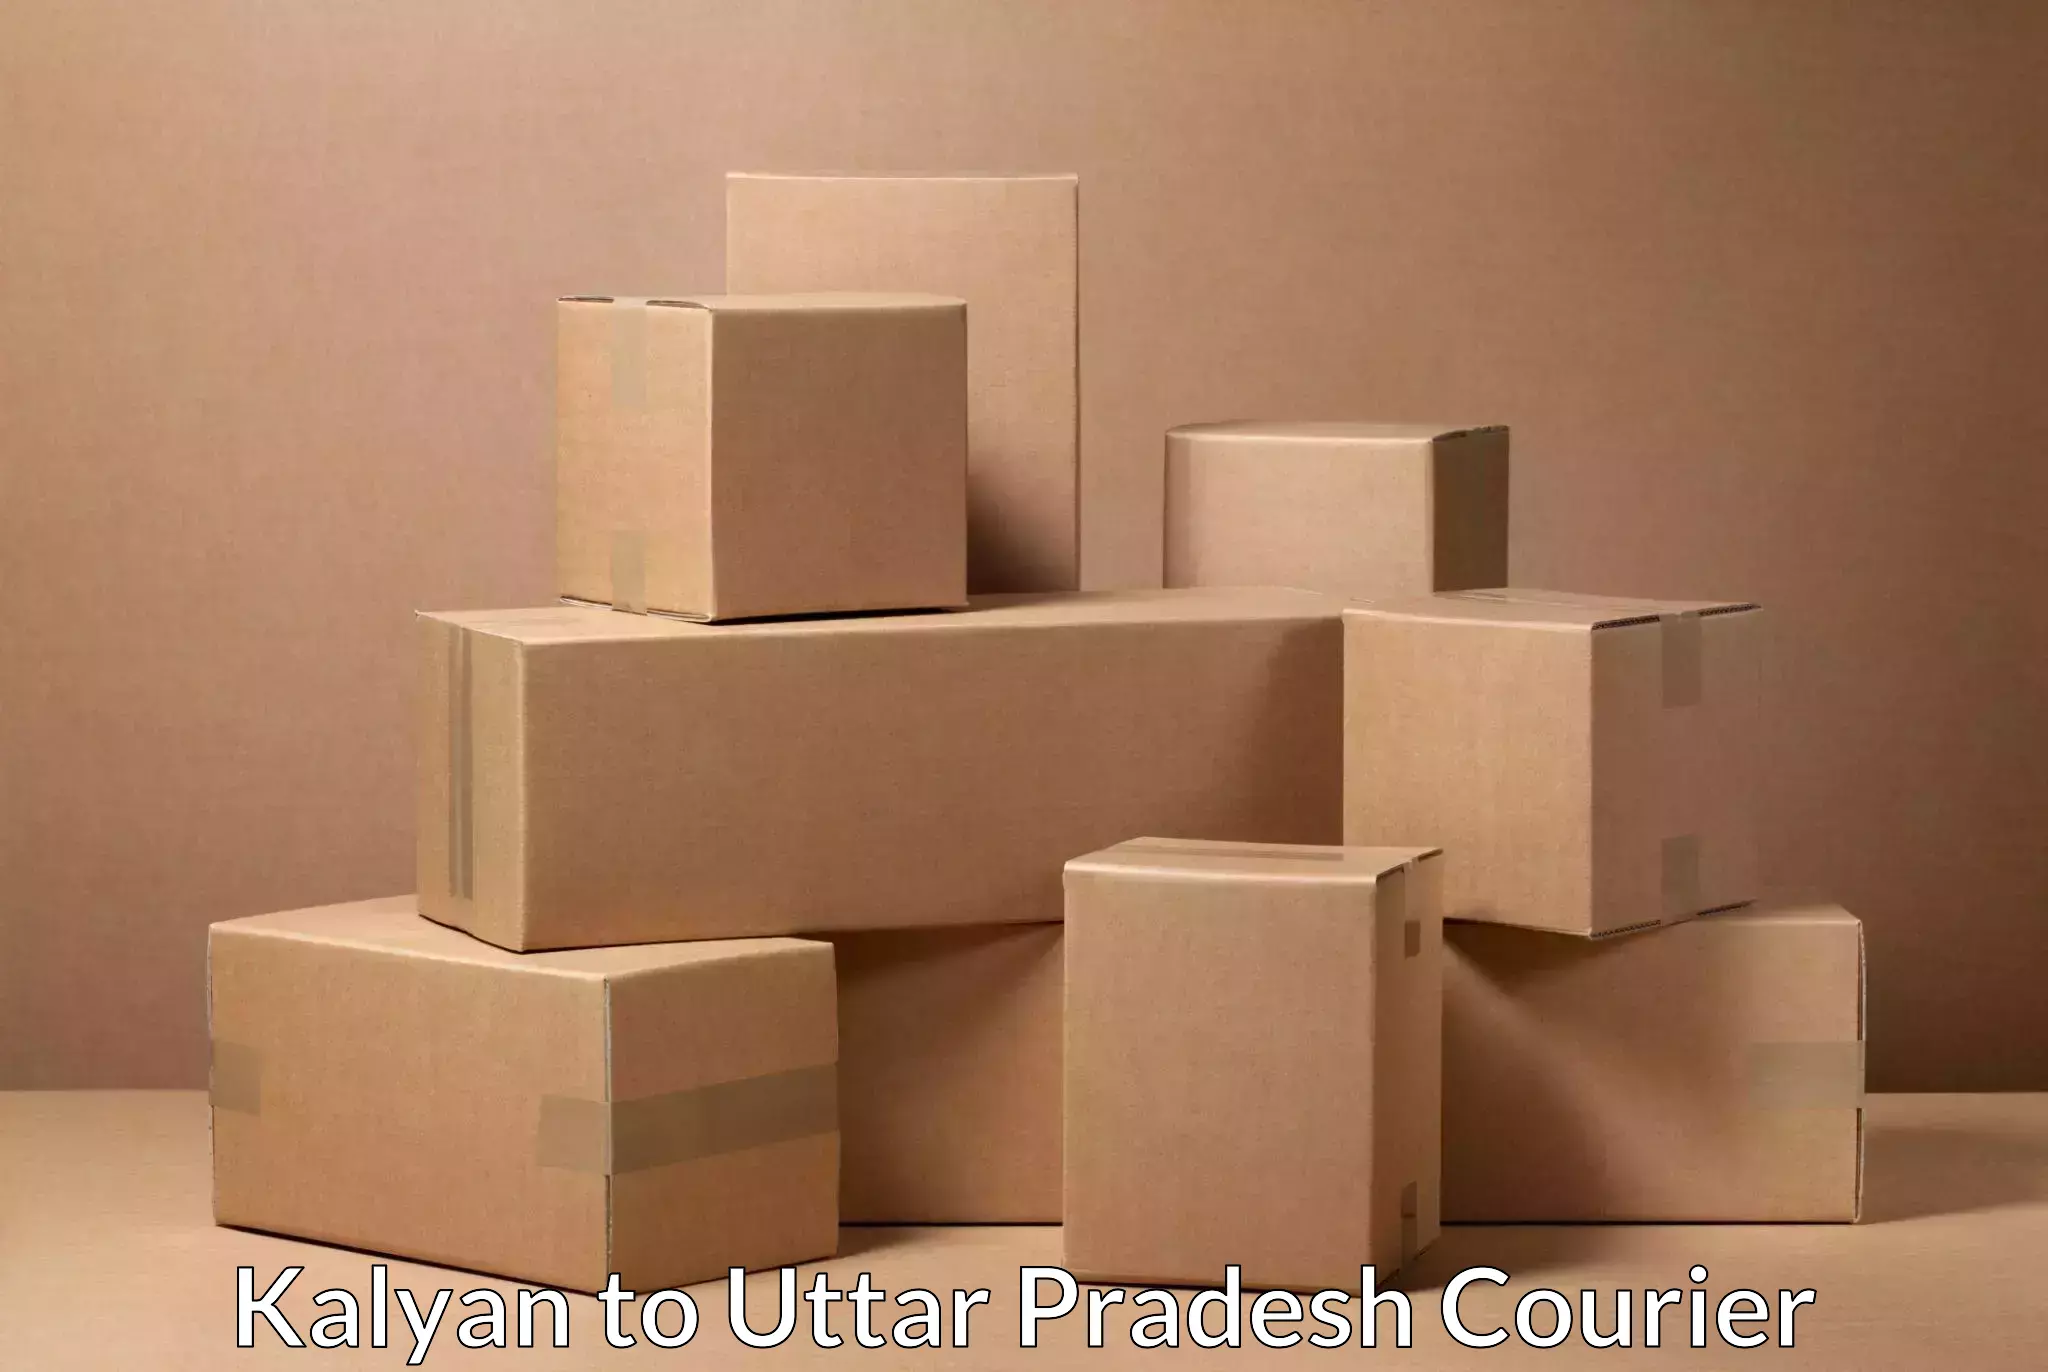 Efficient parcel transport Kalyan to Aliganj